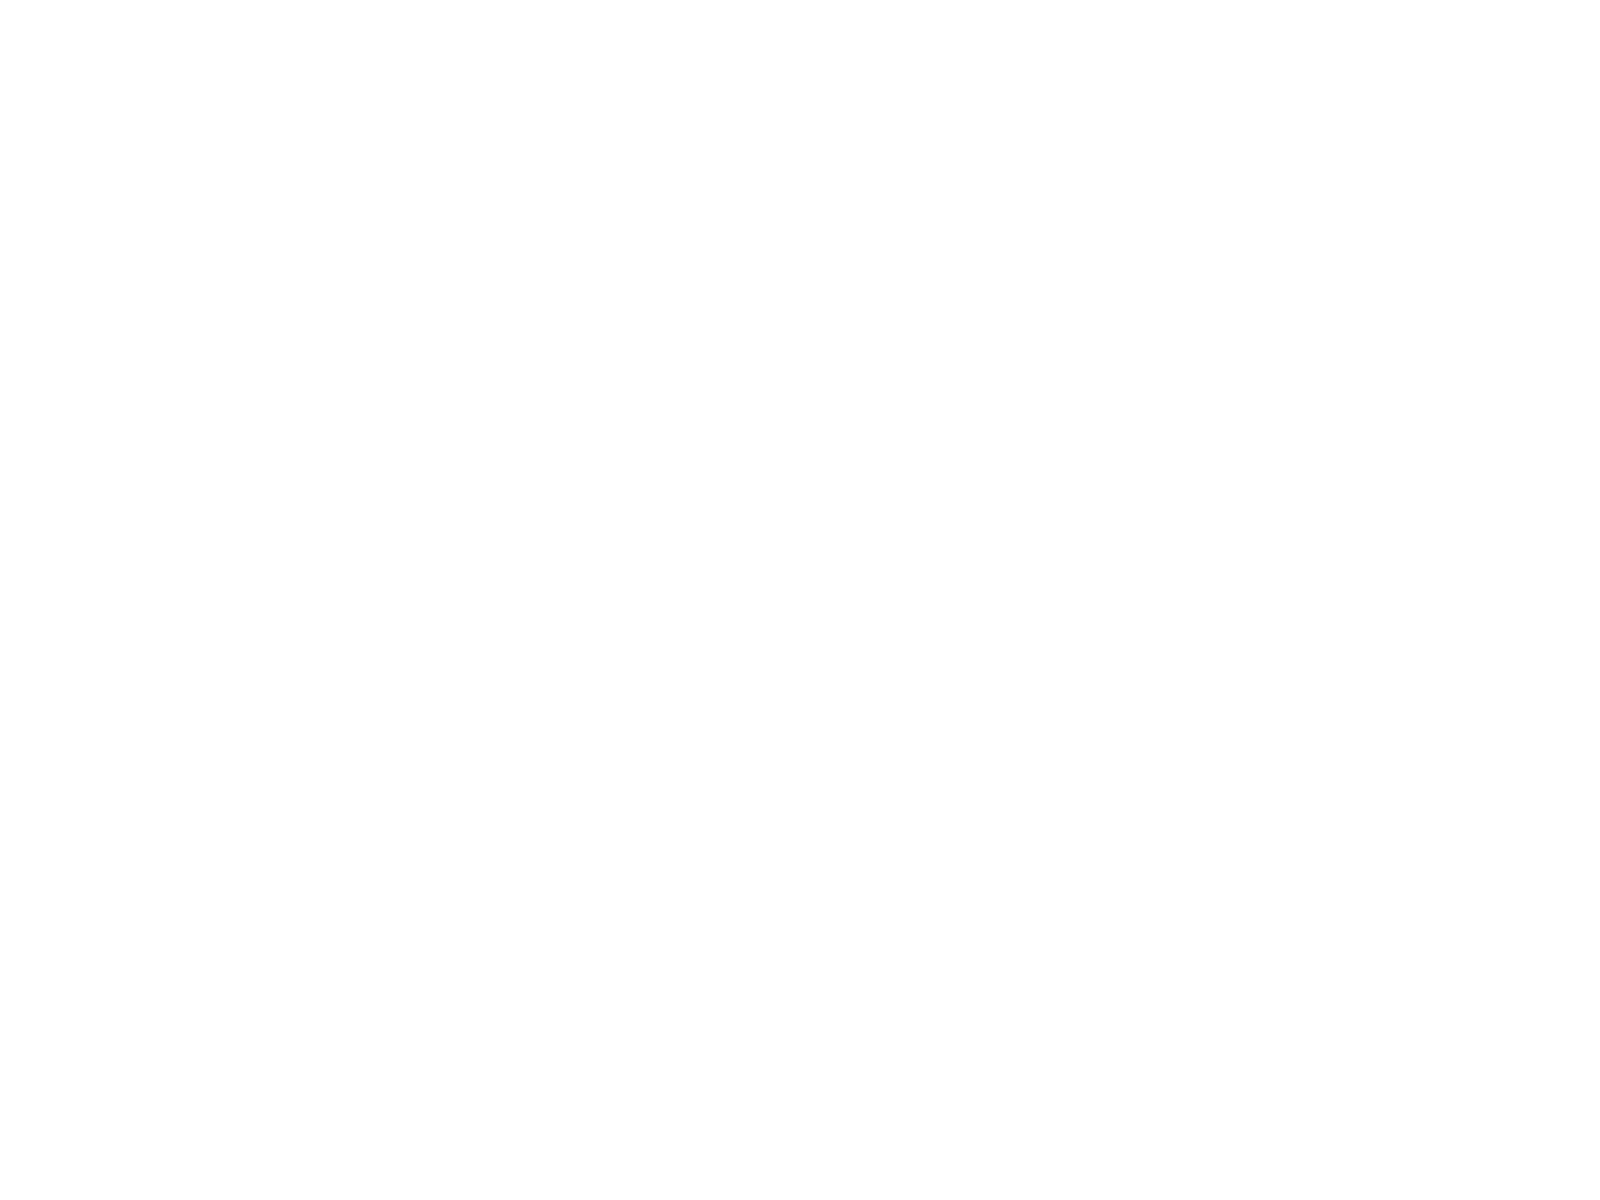 SAFE TRAVEL